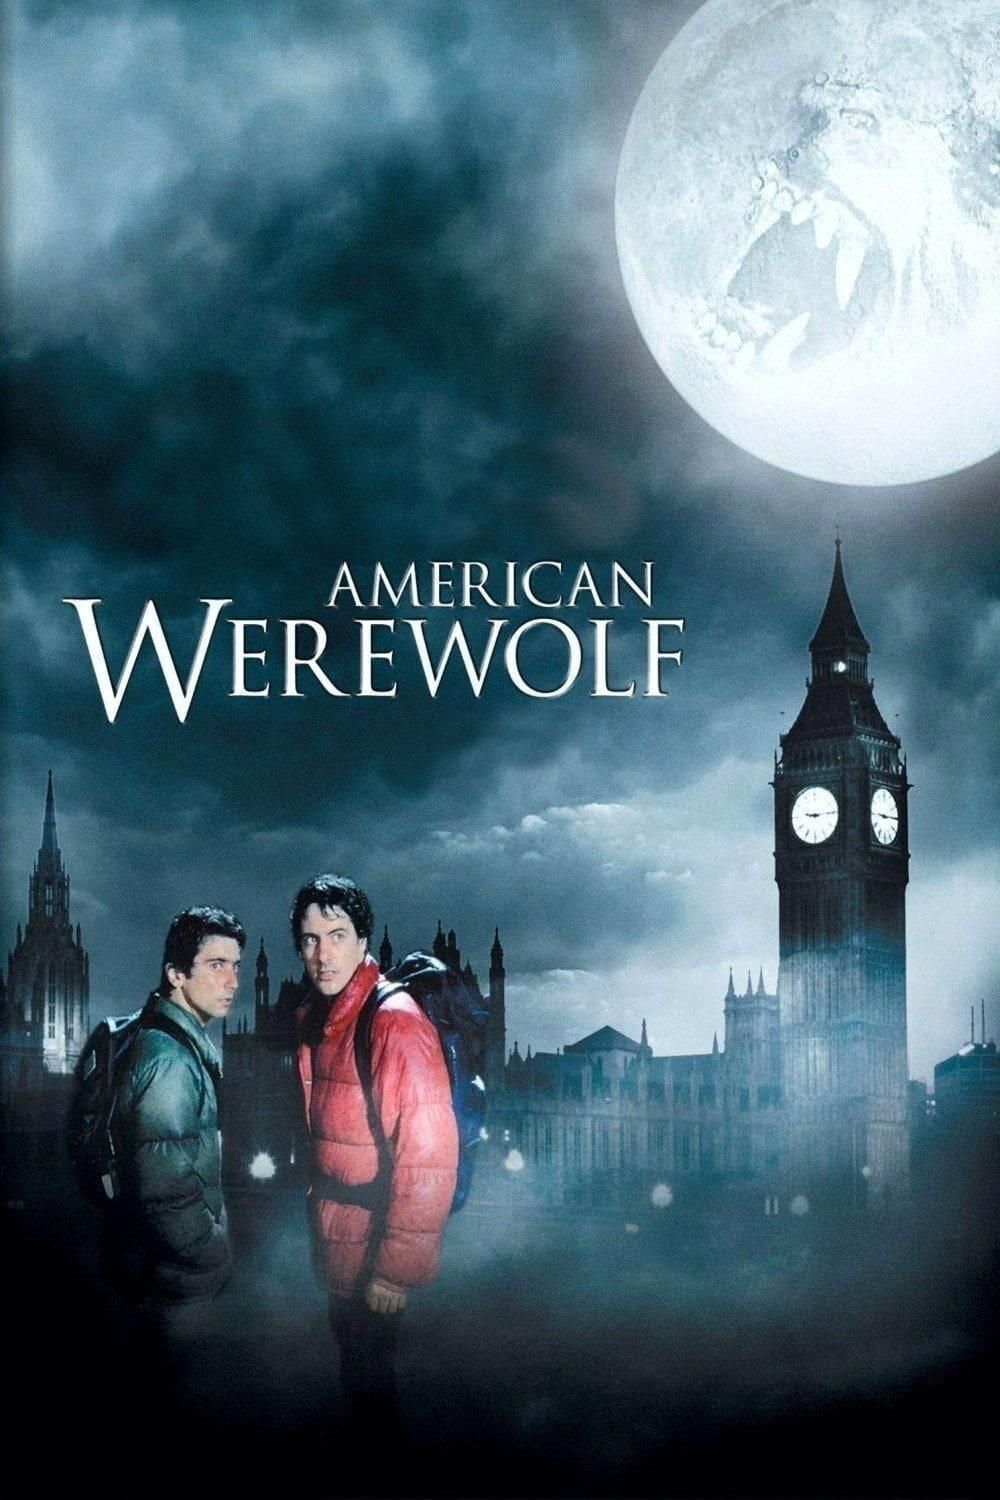 A Werewolf in England Movie trailer